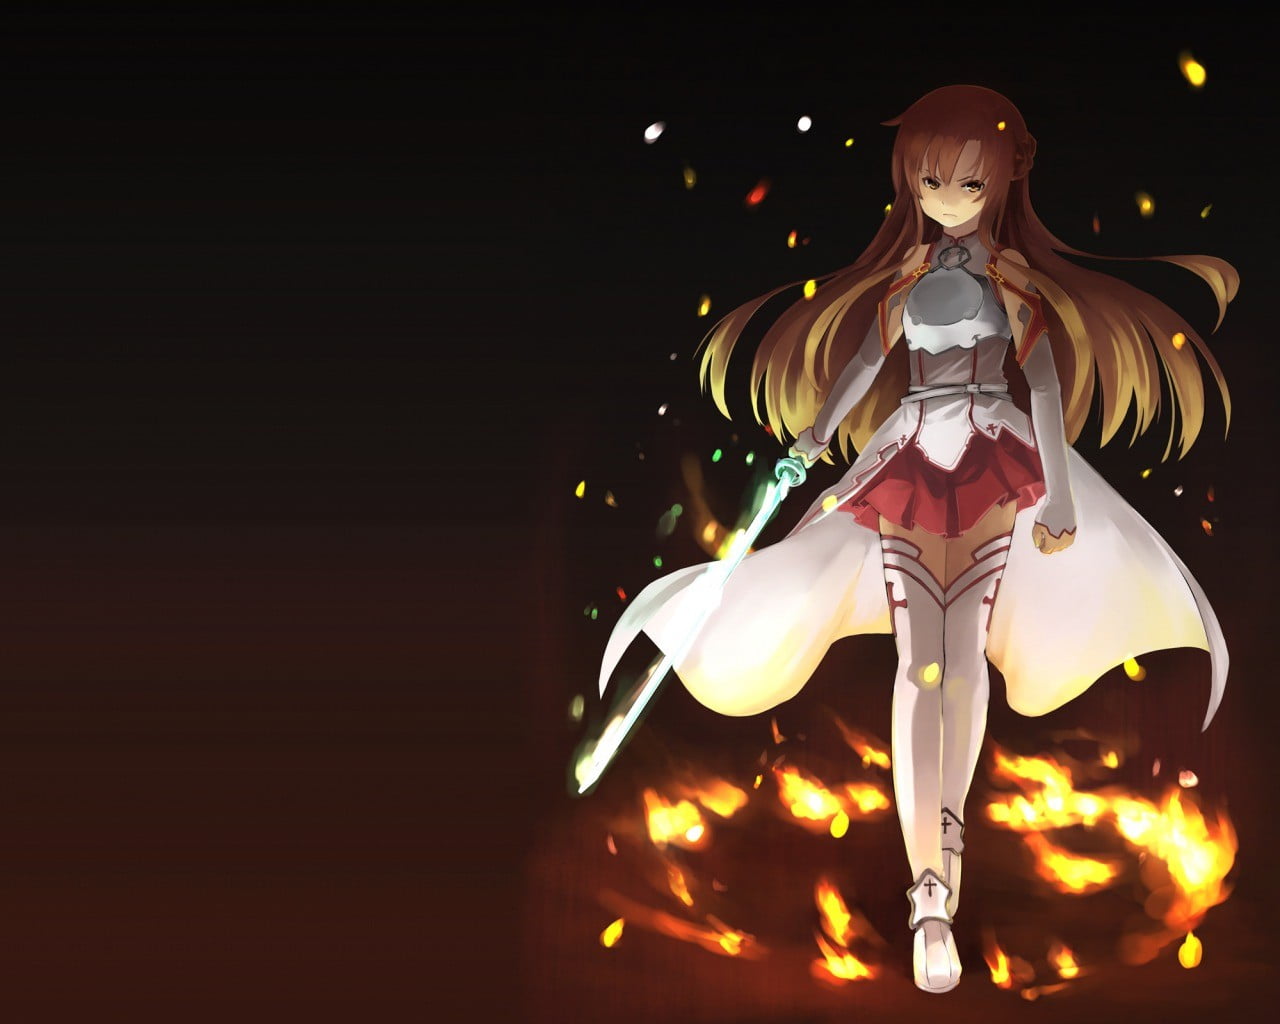 Female anime character in white dress holding sword wallpaper, Yuuki ...